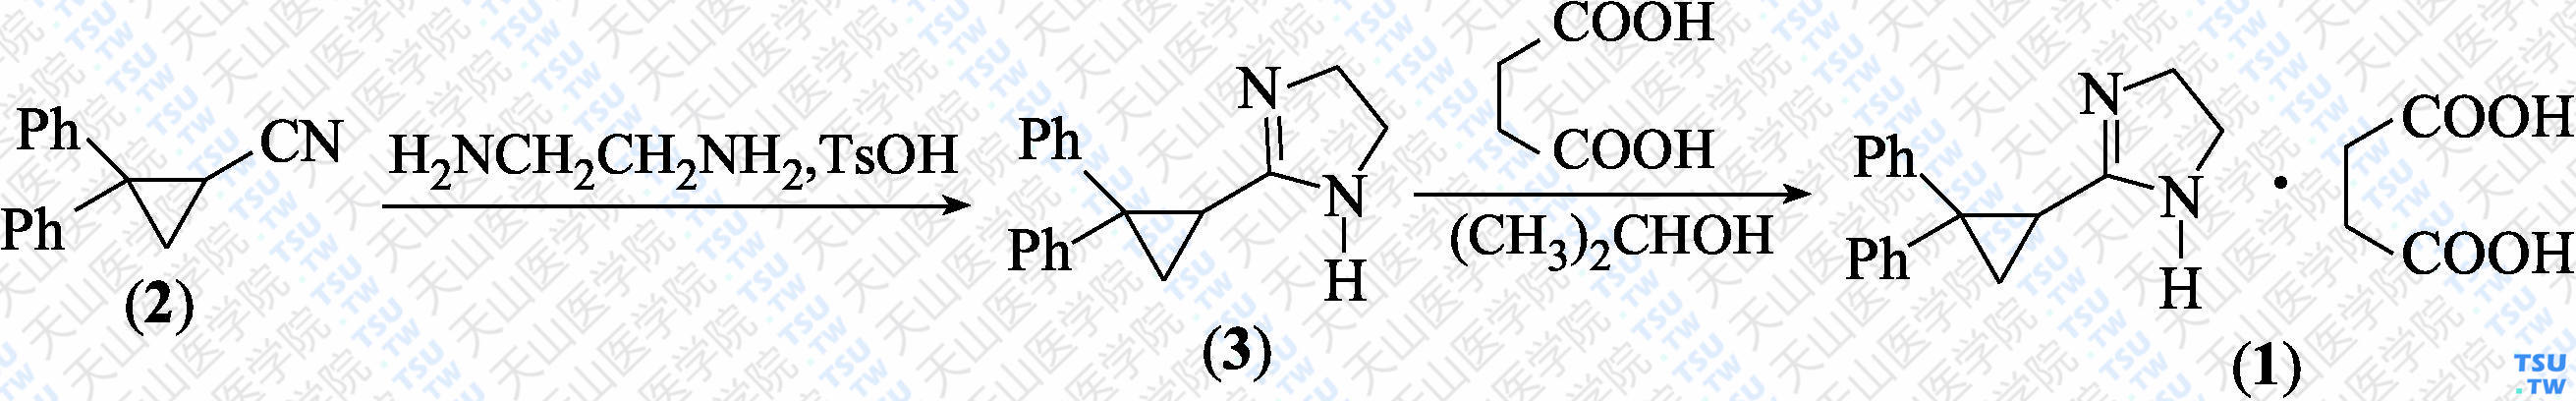 琥珀酸西苯唑啉（分子式：C<sub>18</sub>H<sub>18</sub>N<sub>2</sub>·C<sub>4</sub>H<sub>6</sub>O<sub>4</sub>）的合成方法路线及其结构式